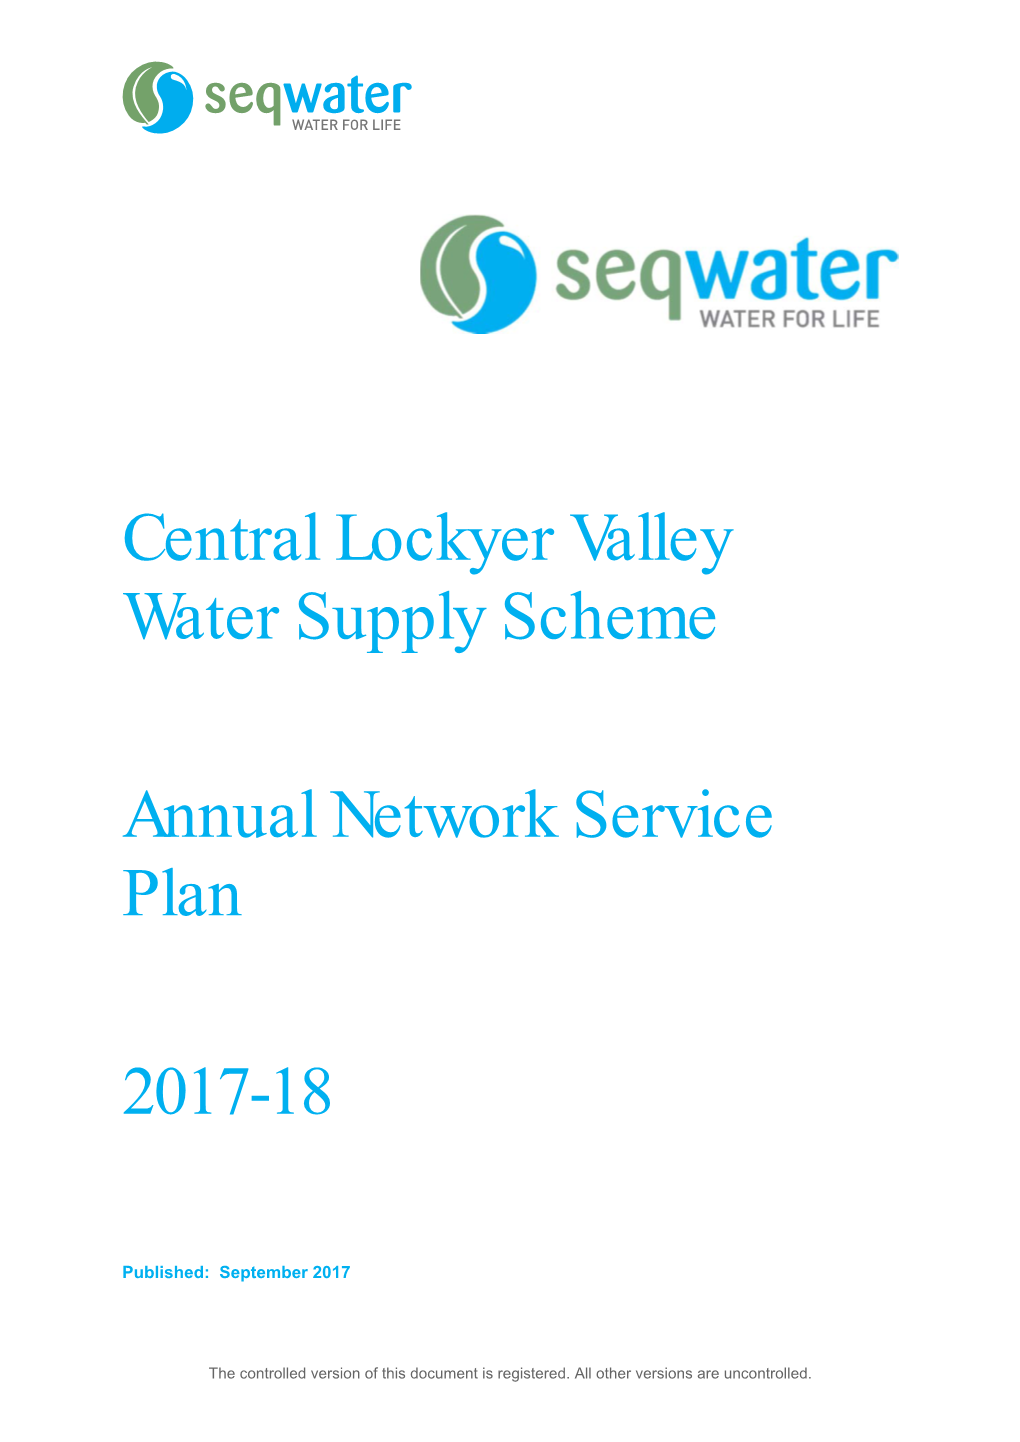 Central Lockyer Valley Water Supply Scheme Annual Network Service